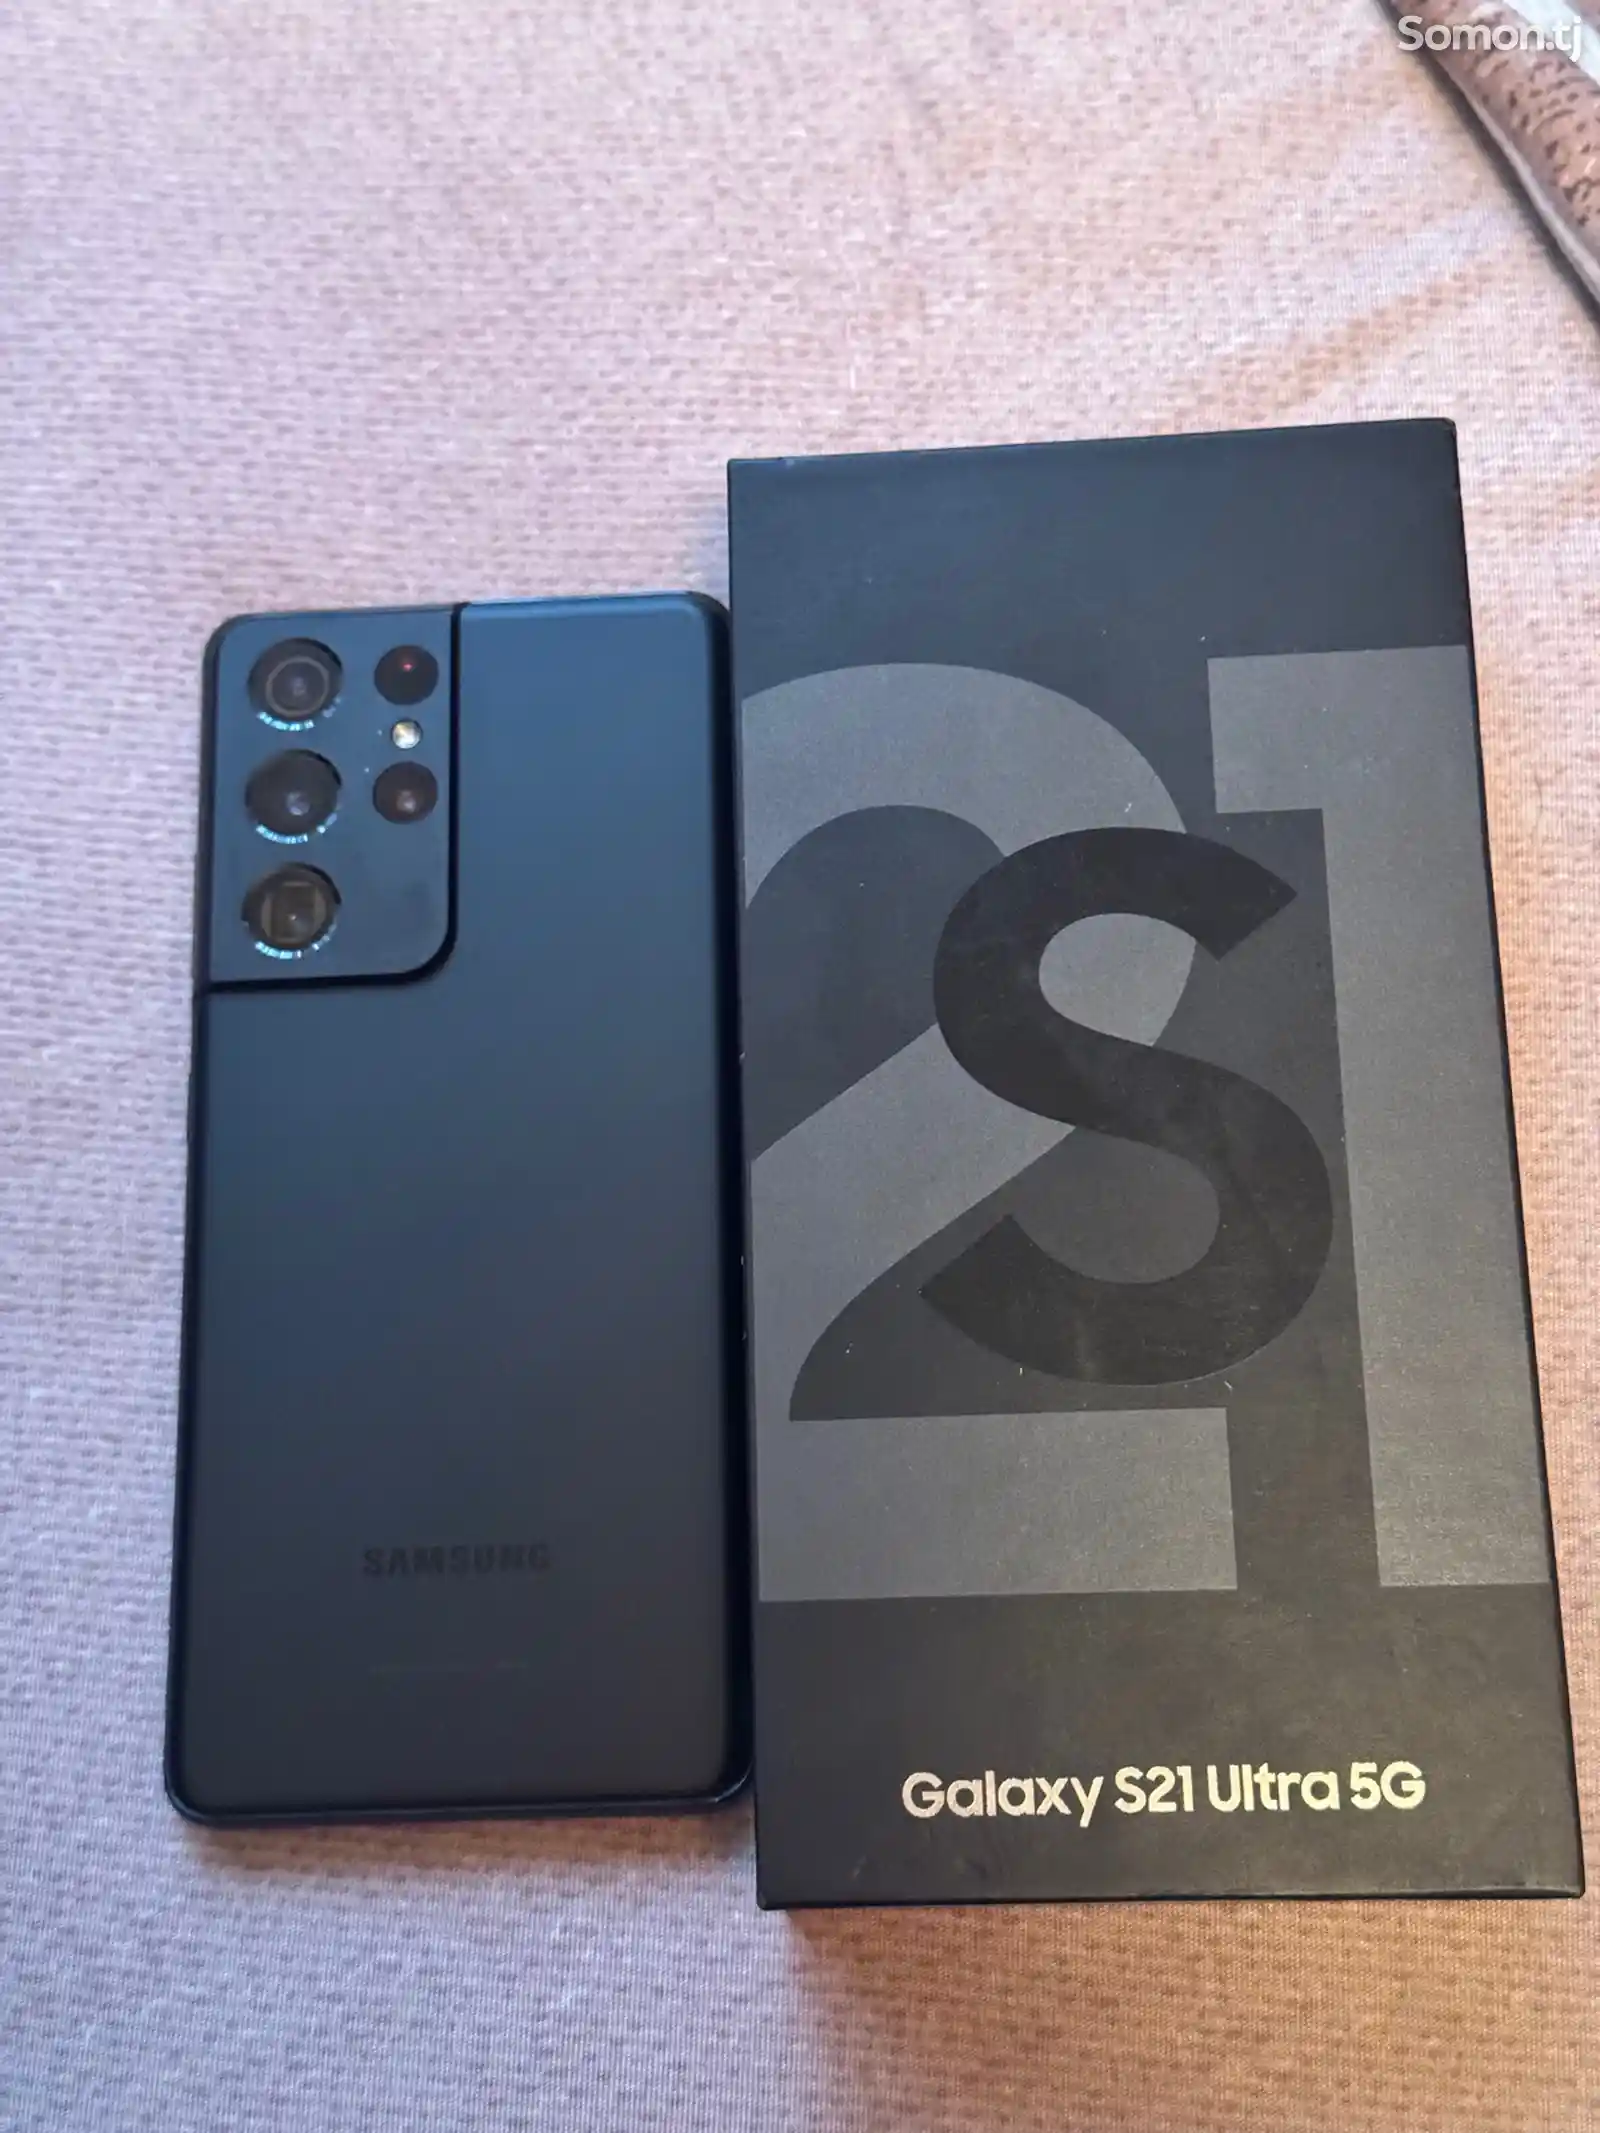 Samsun Galaxy S21 Ultra 5G-5